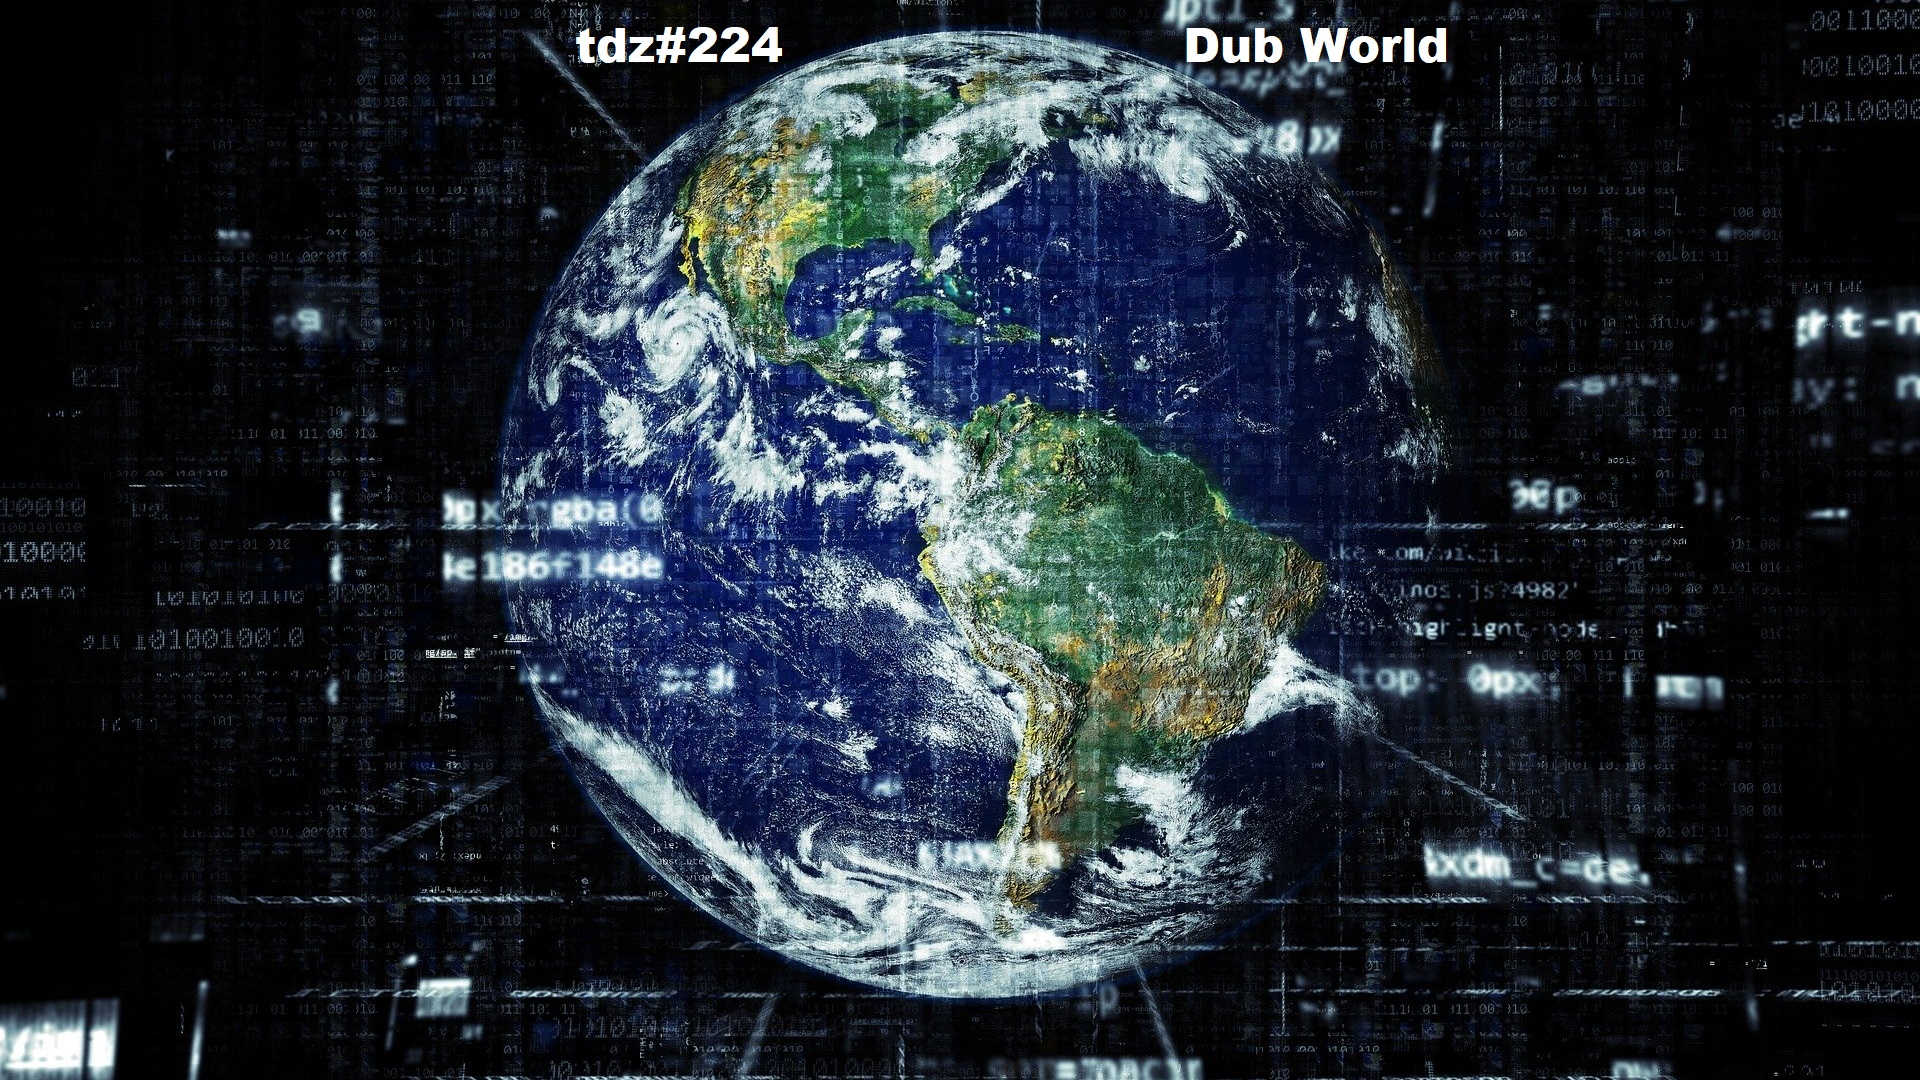 TDZ#224... Dub World.....